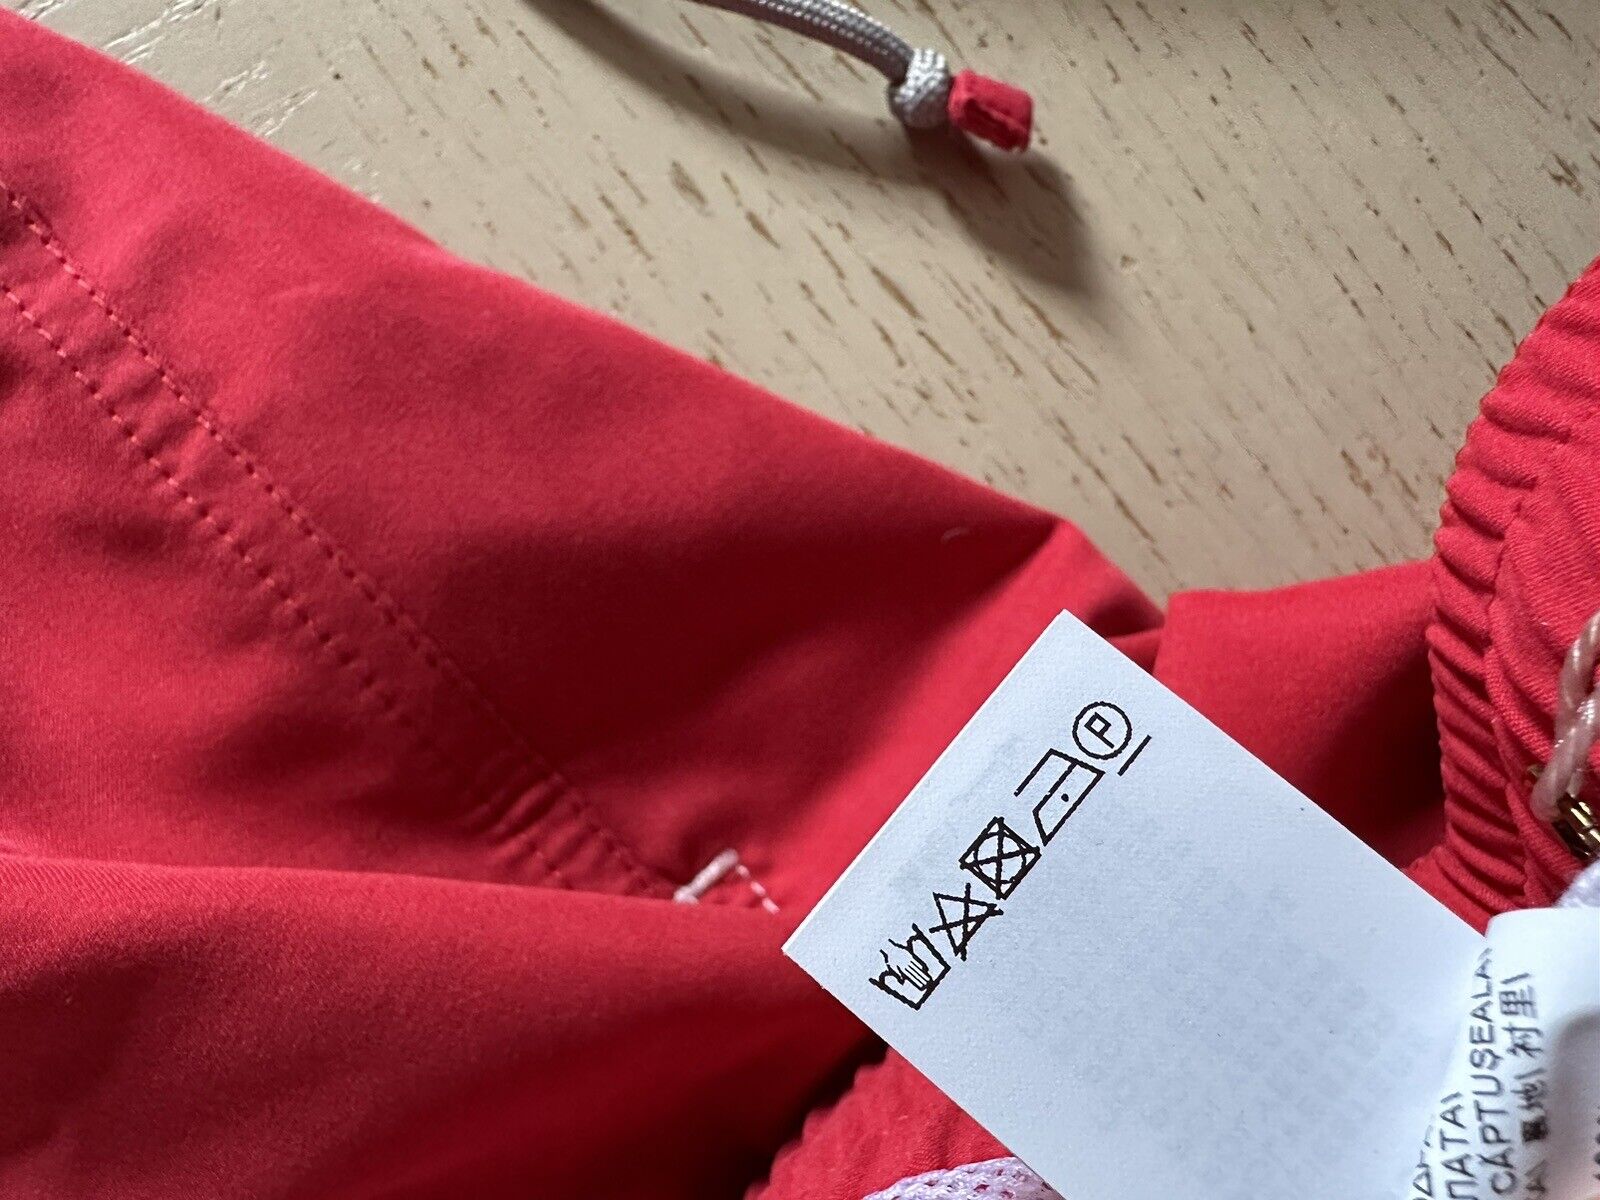 Neu mit Etikett: 550 $ Brunello Cucinelli Herren-Badeshorts mit Kordelzug, Farbe Rot, XL, Italien